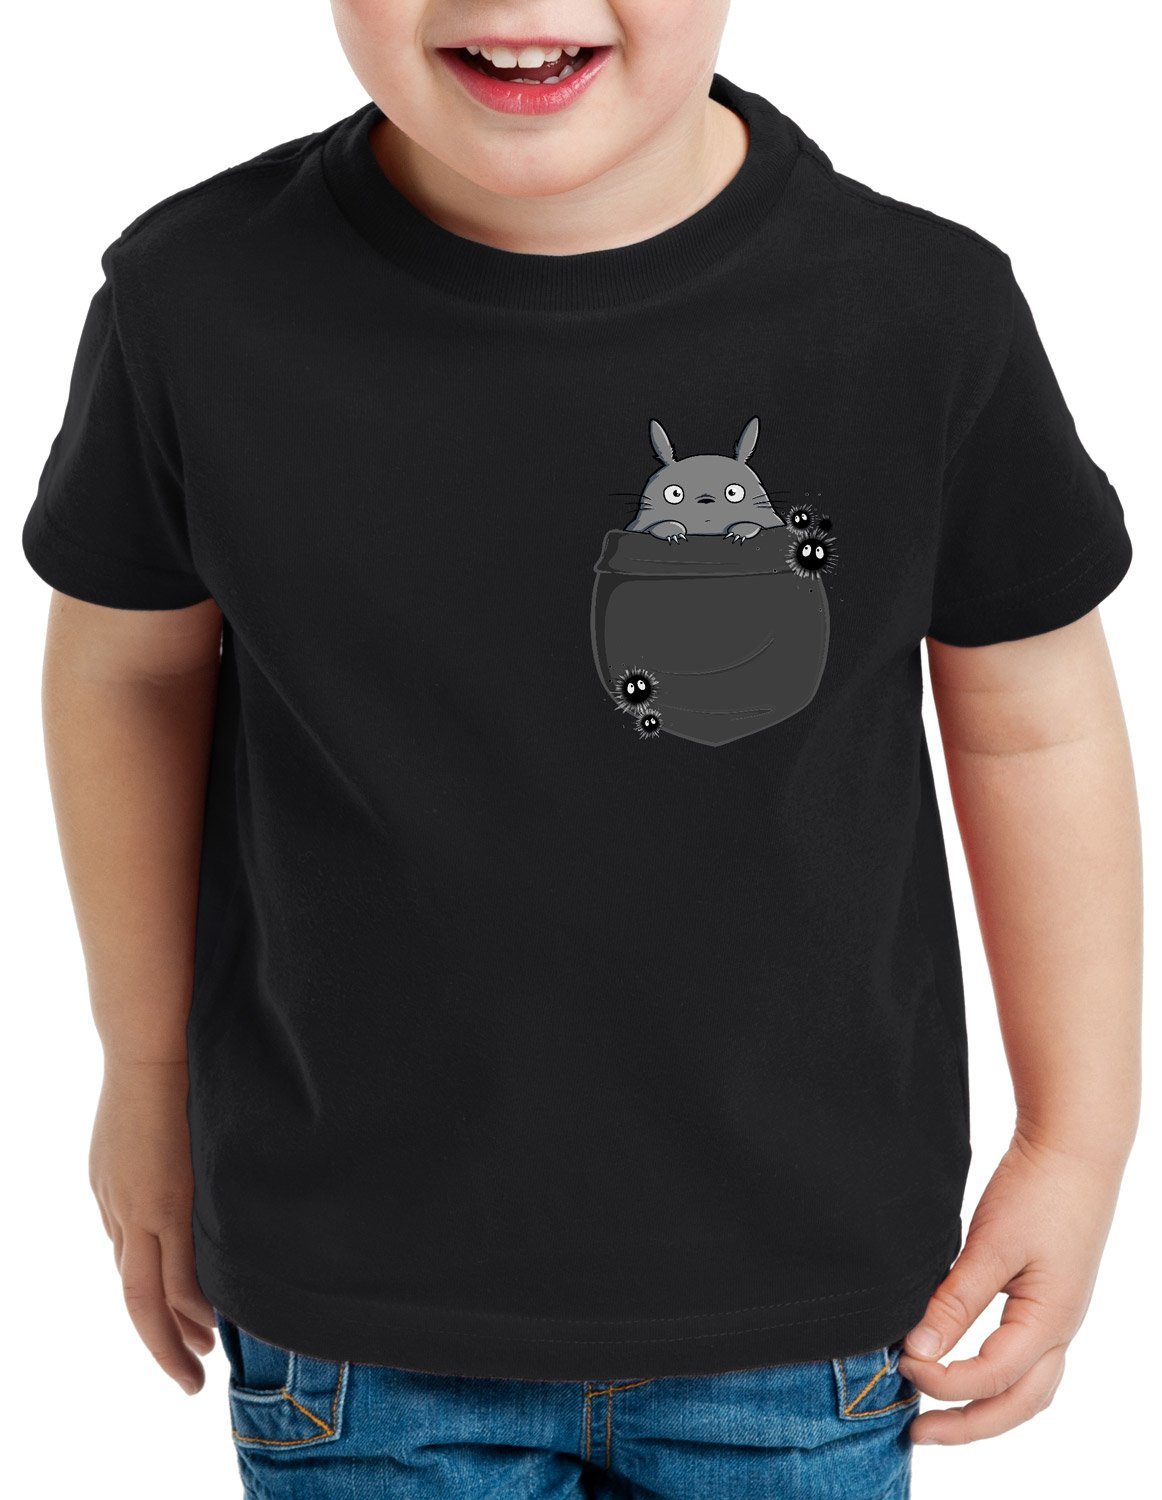 schwarz anime Kinder mein Print-Shirt Brusttasche no tonari neko T-Shirt style3 nachbar Totoro